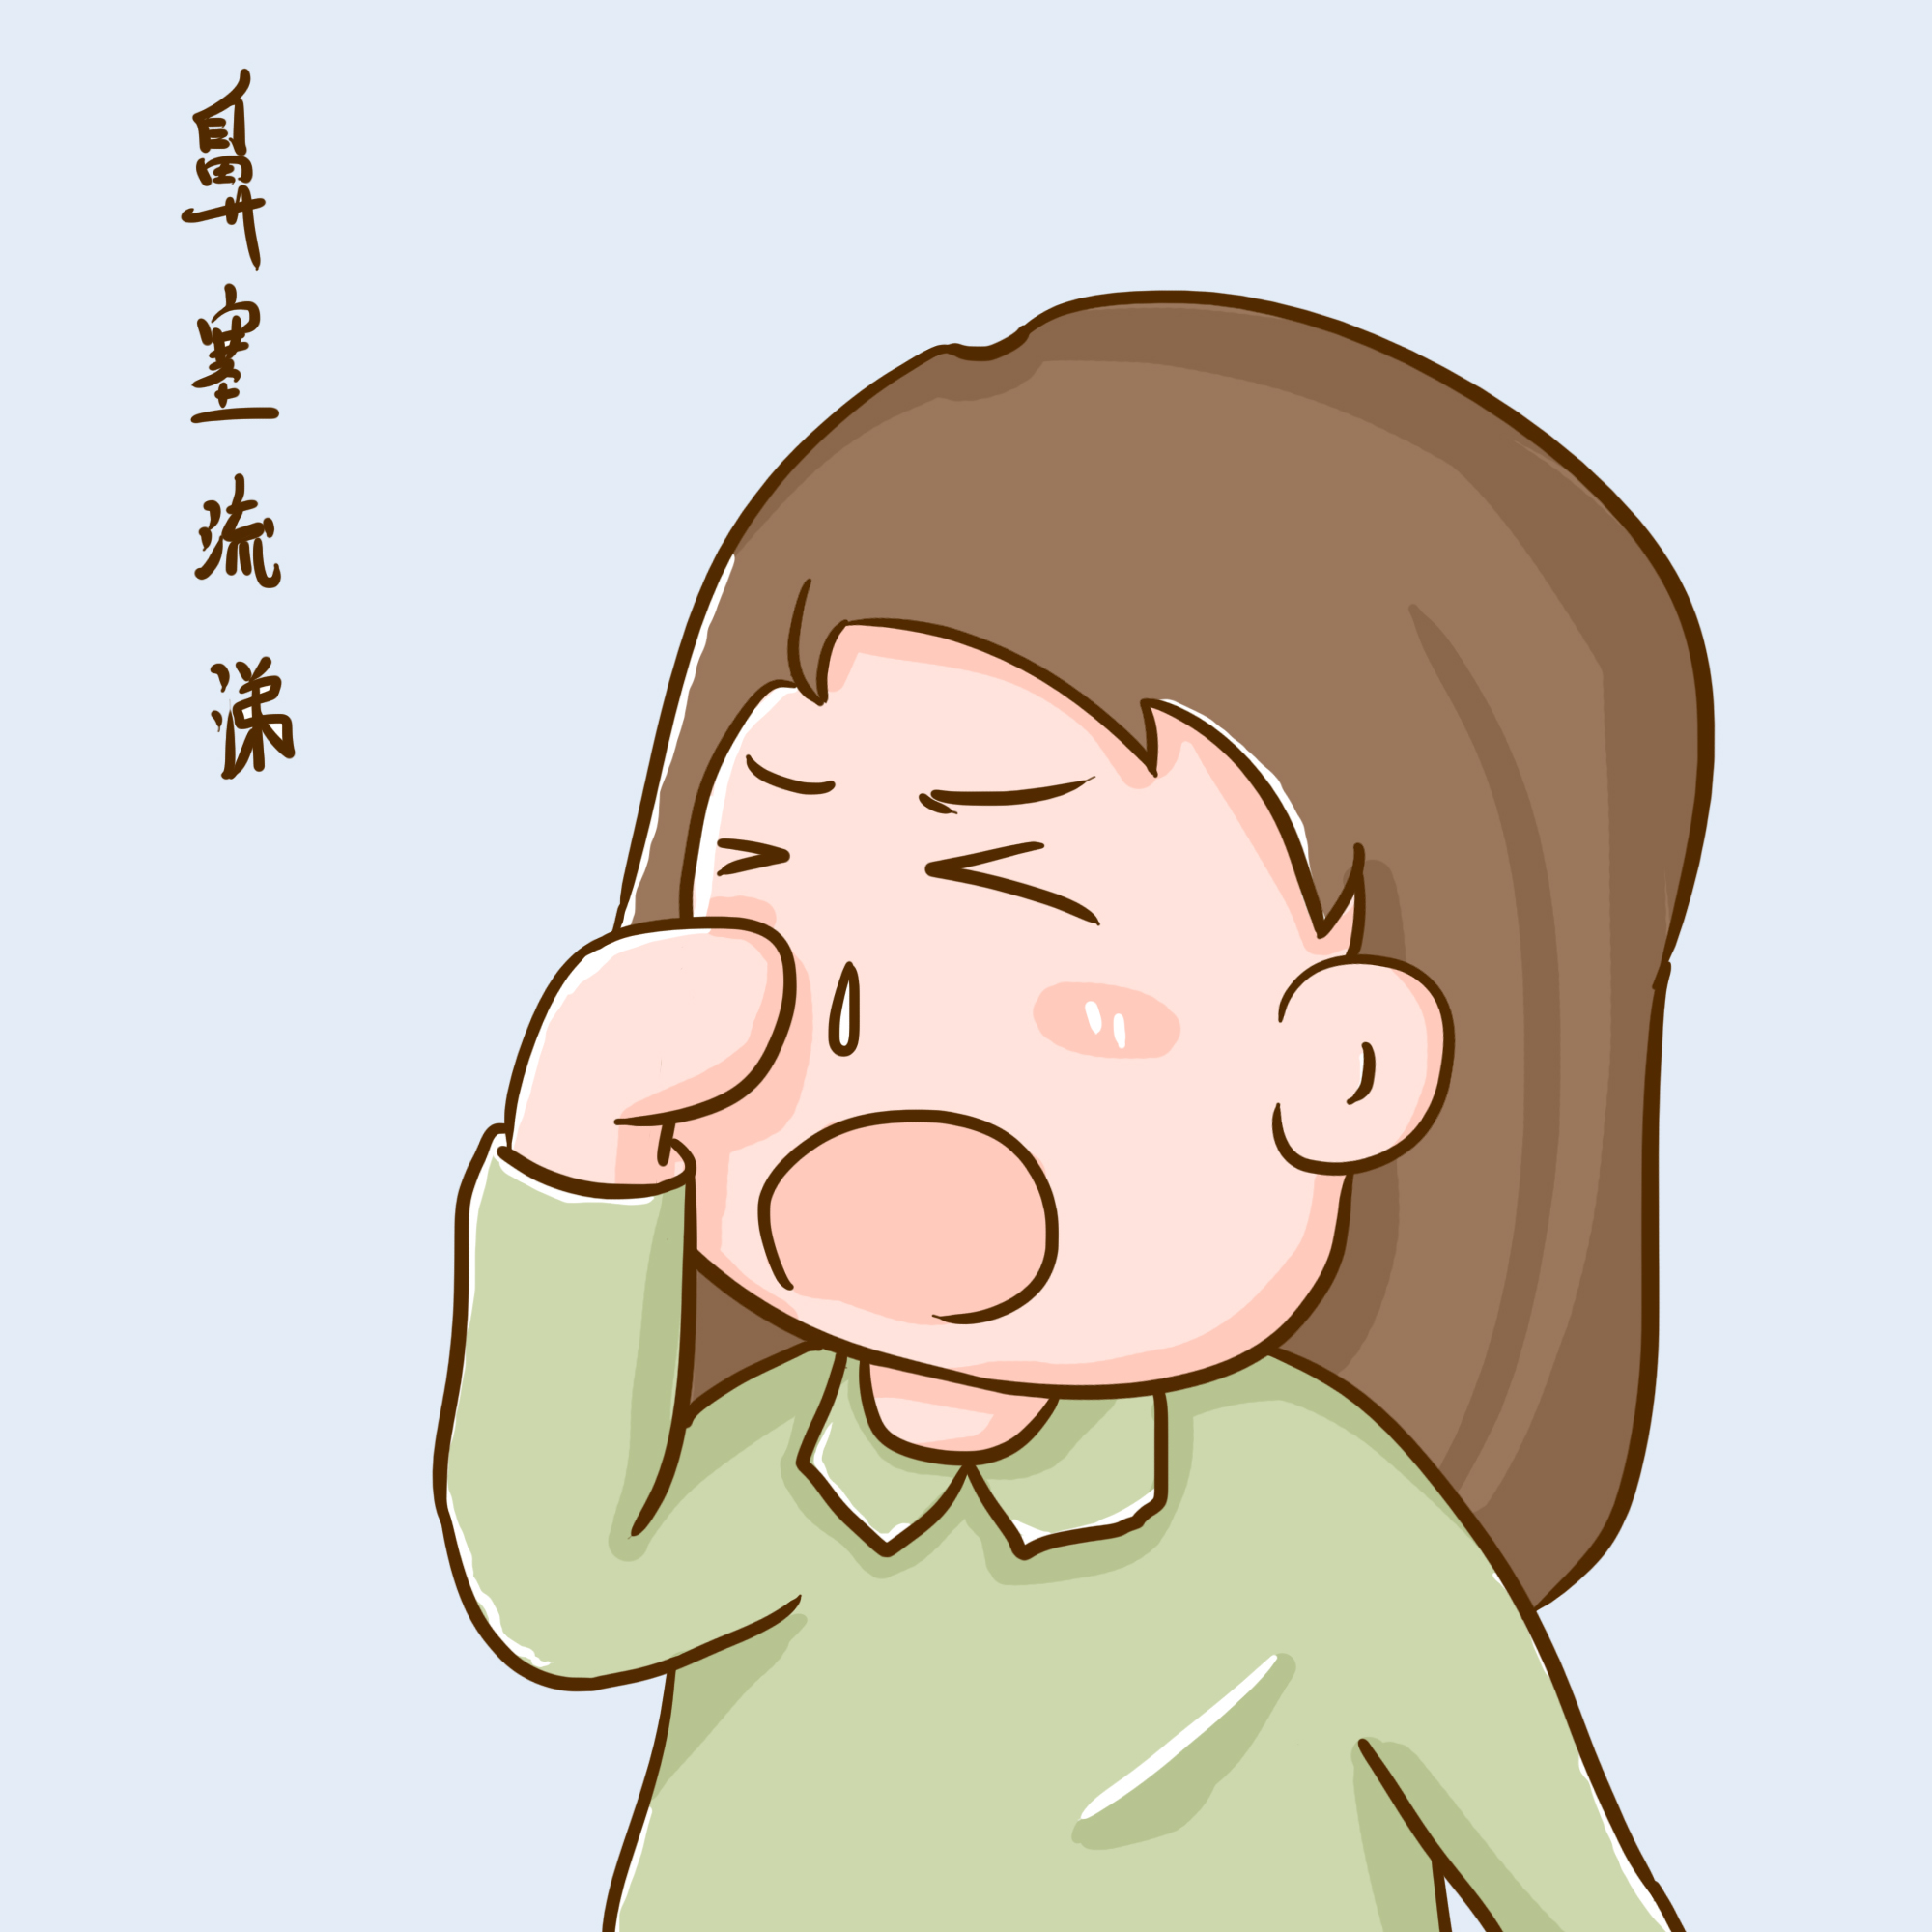 感冒鼻塞乏力吃什么药？